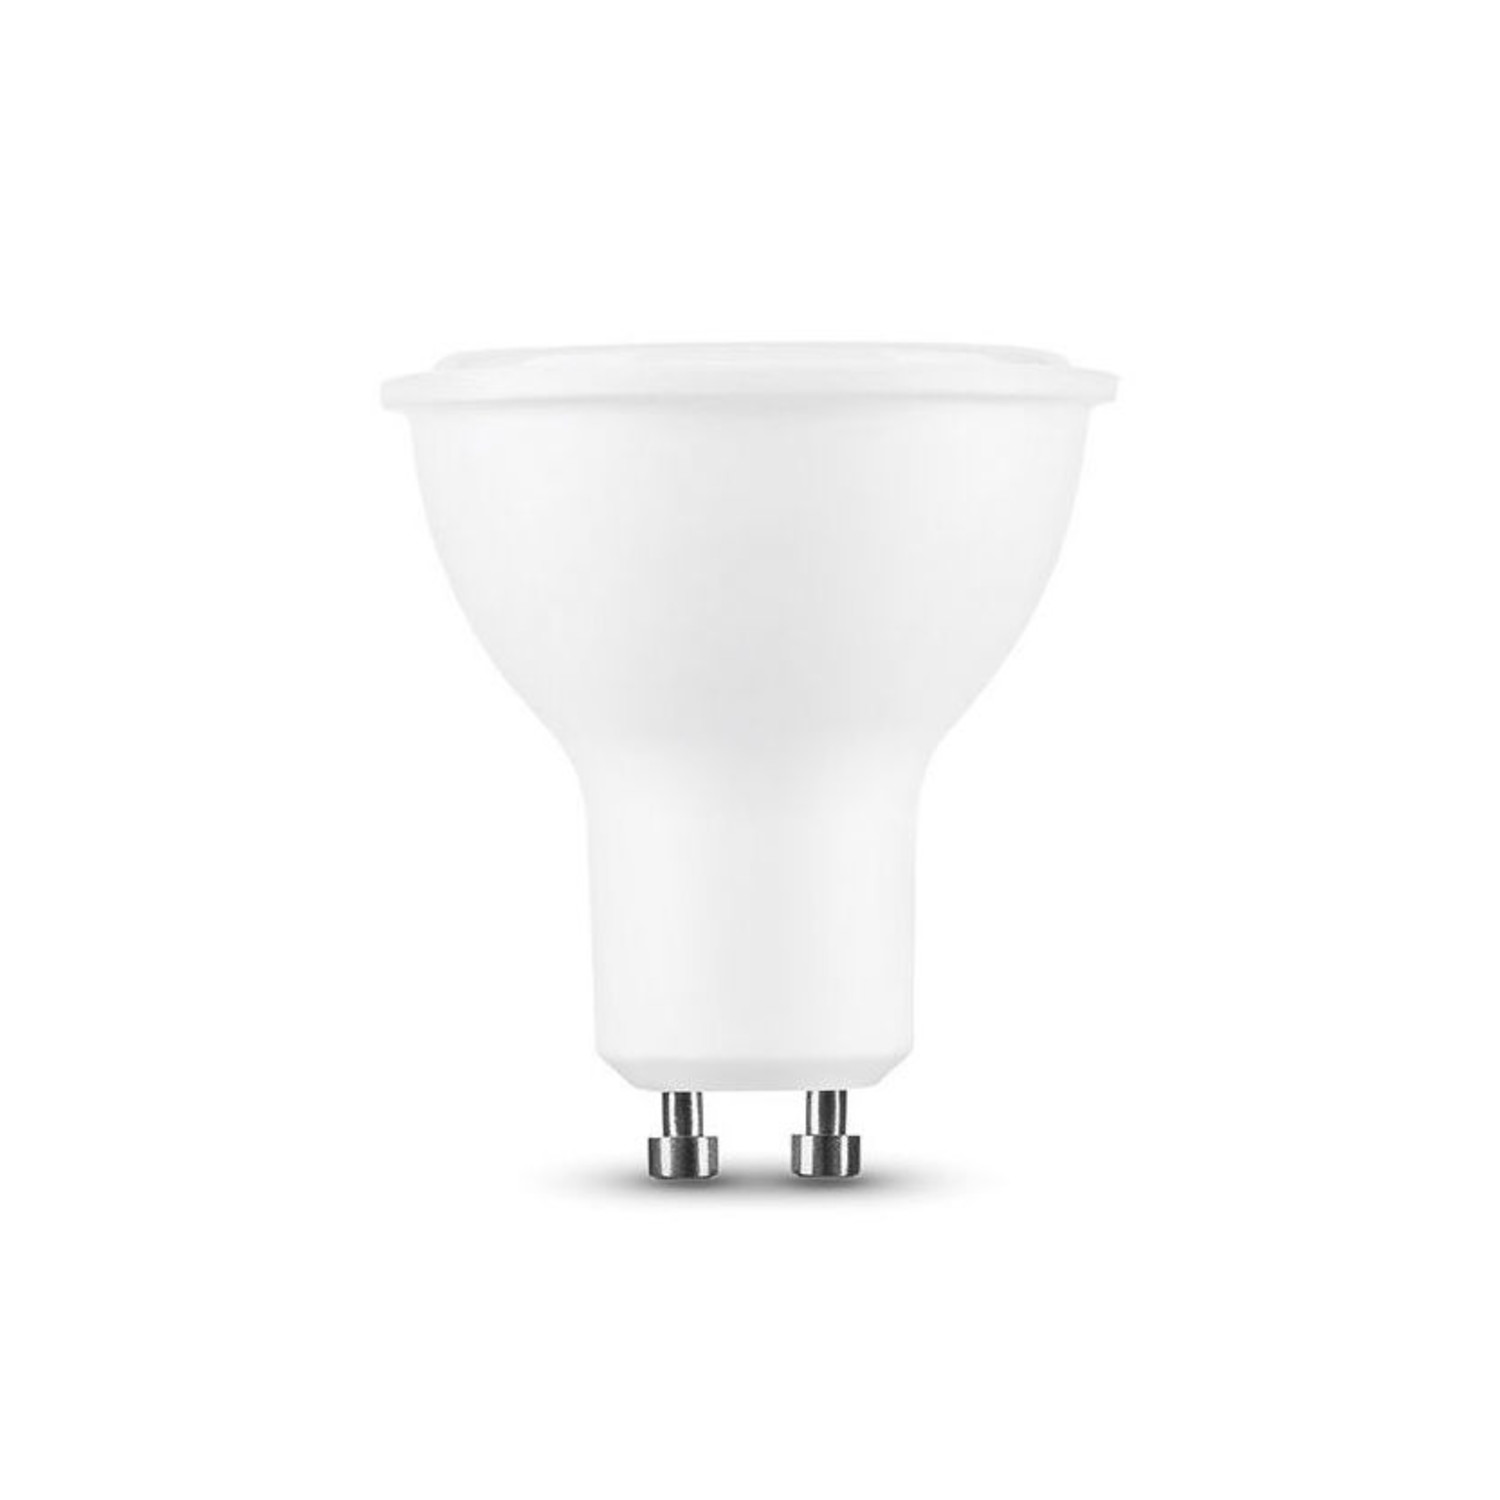 Verschrikking huiselijk ruimte LED spot GU10 - 3W vervangt 40W - 2700K warm wit licht -  Ledlichtdiscounter.nl